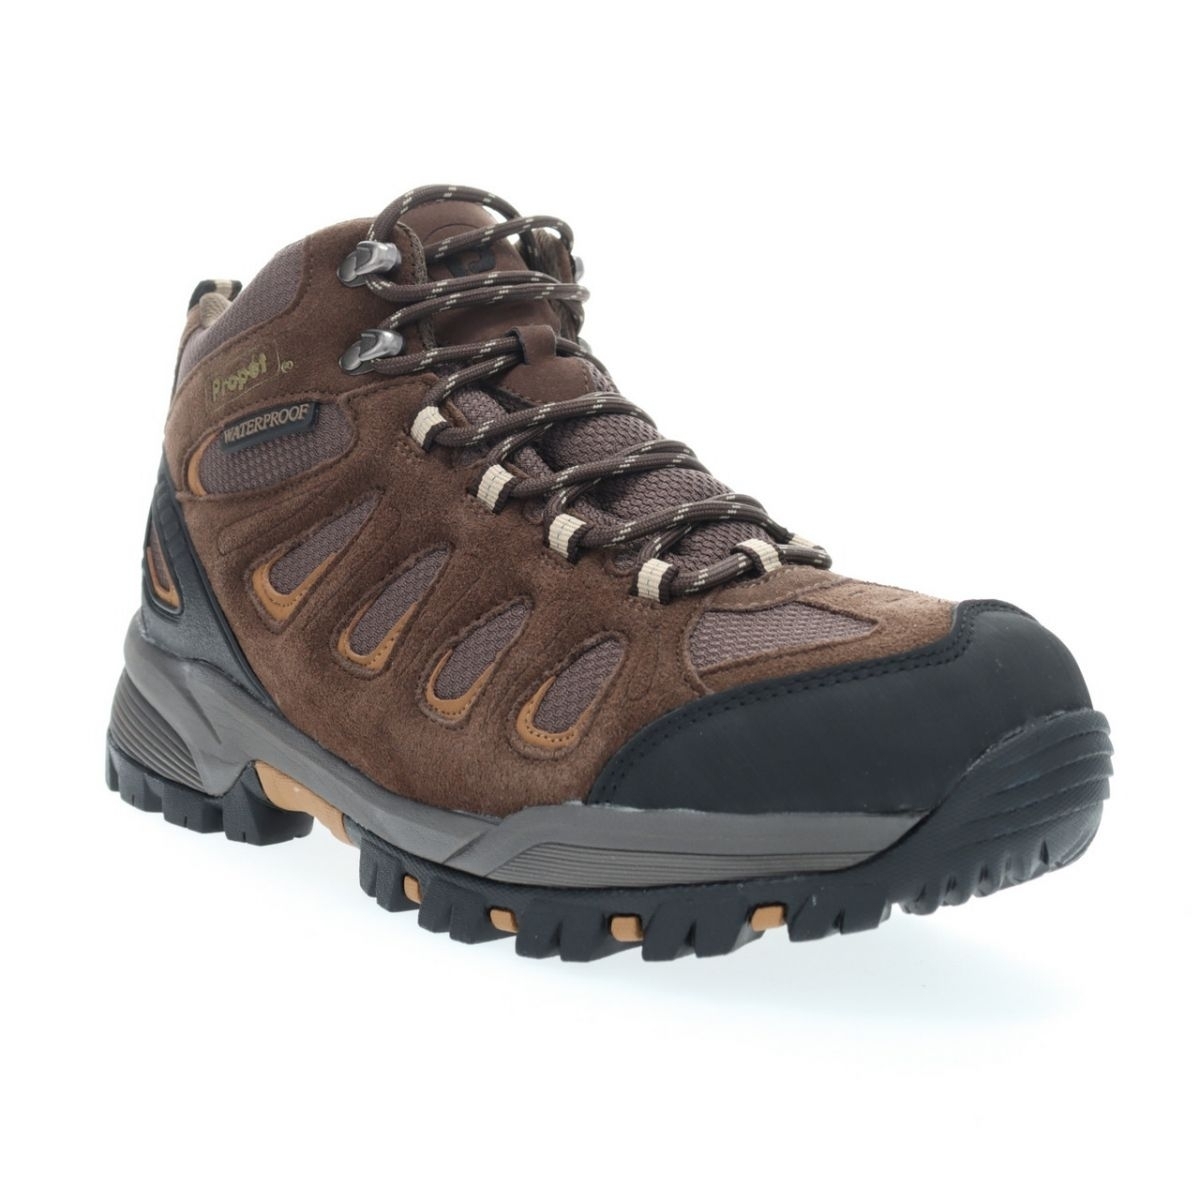 Propet Men's Ridge Walker Hiking Boot Brown - M3599BR 8 XX US Men BROWN - BROWN, 11.5 XX-Wide